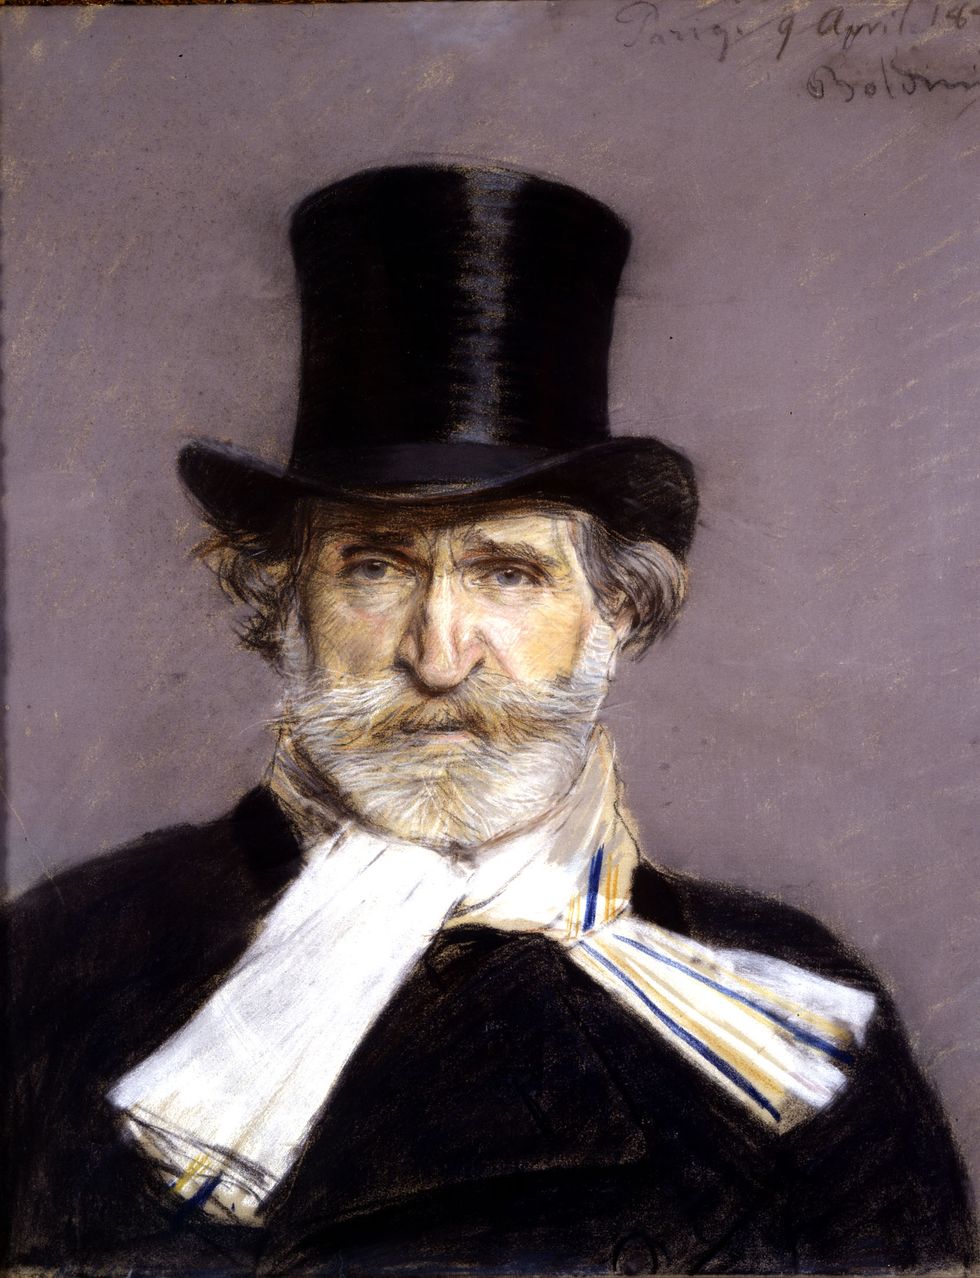 Leggete le lettere di Giuseppe Verdi, se cercate sorprese